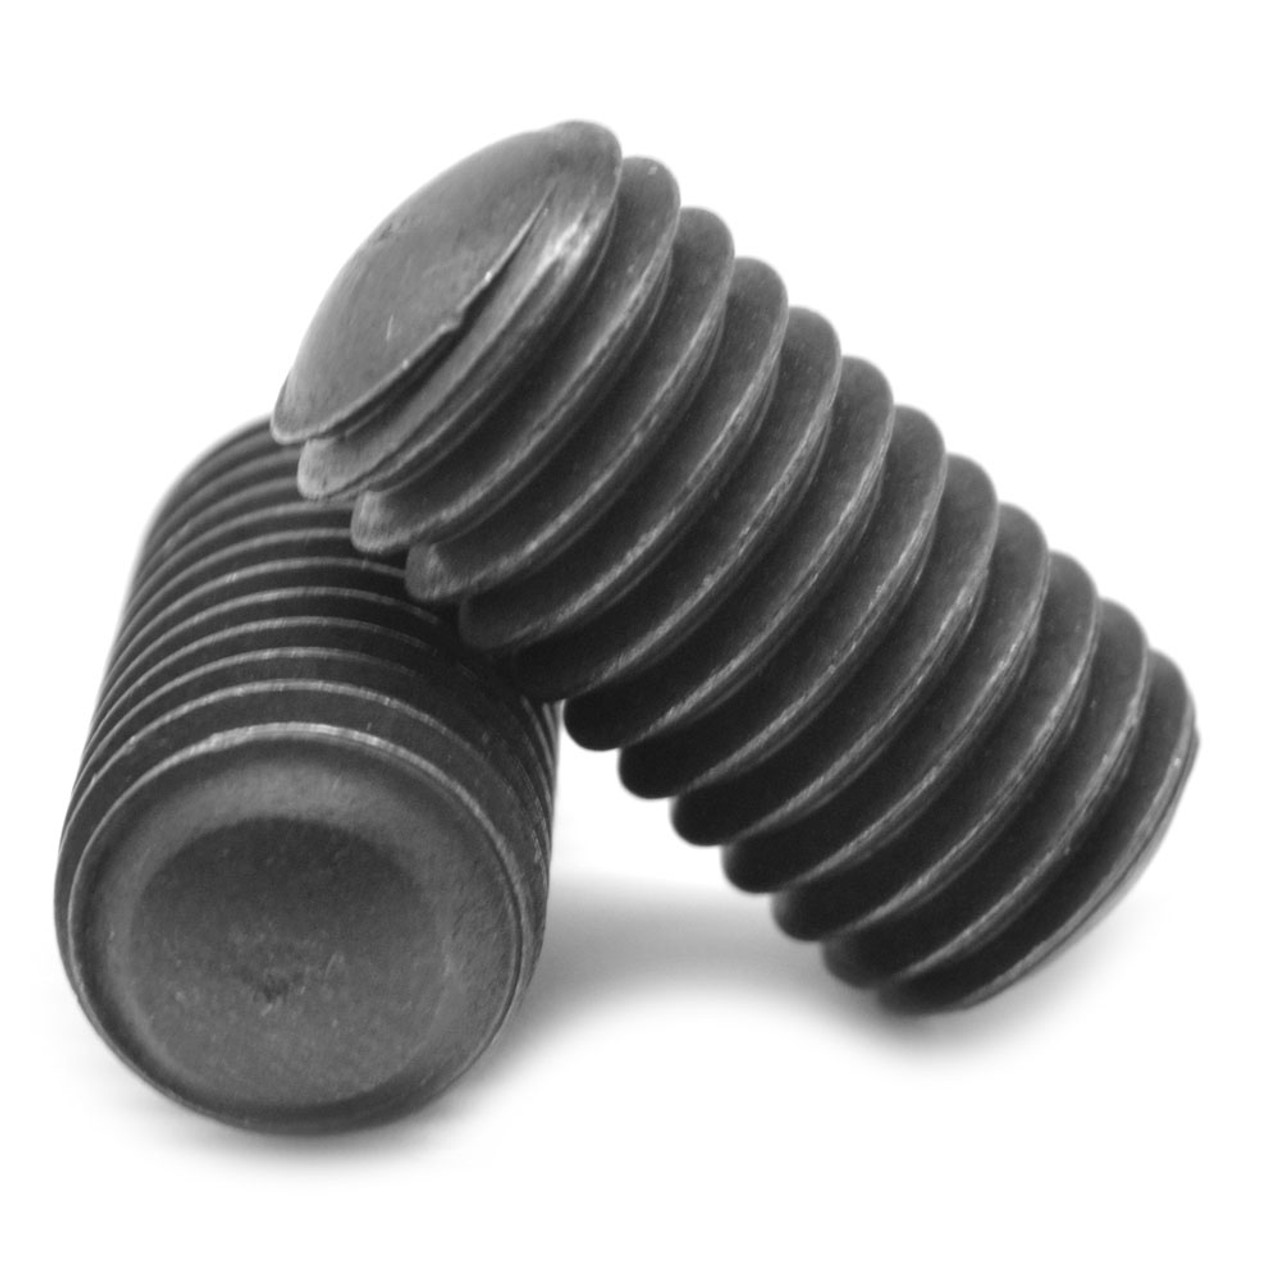 1/2"-13 x 3/4" Coarse Thread Socket Set Screw Oval Point Alloy Steel Black Oxide